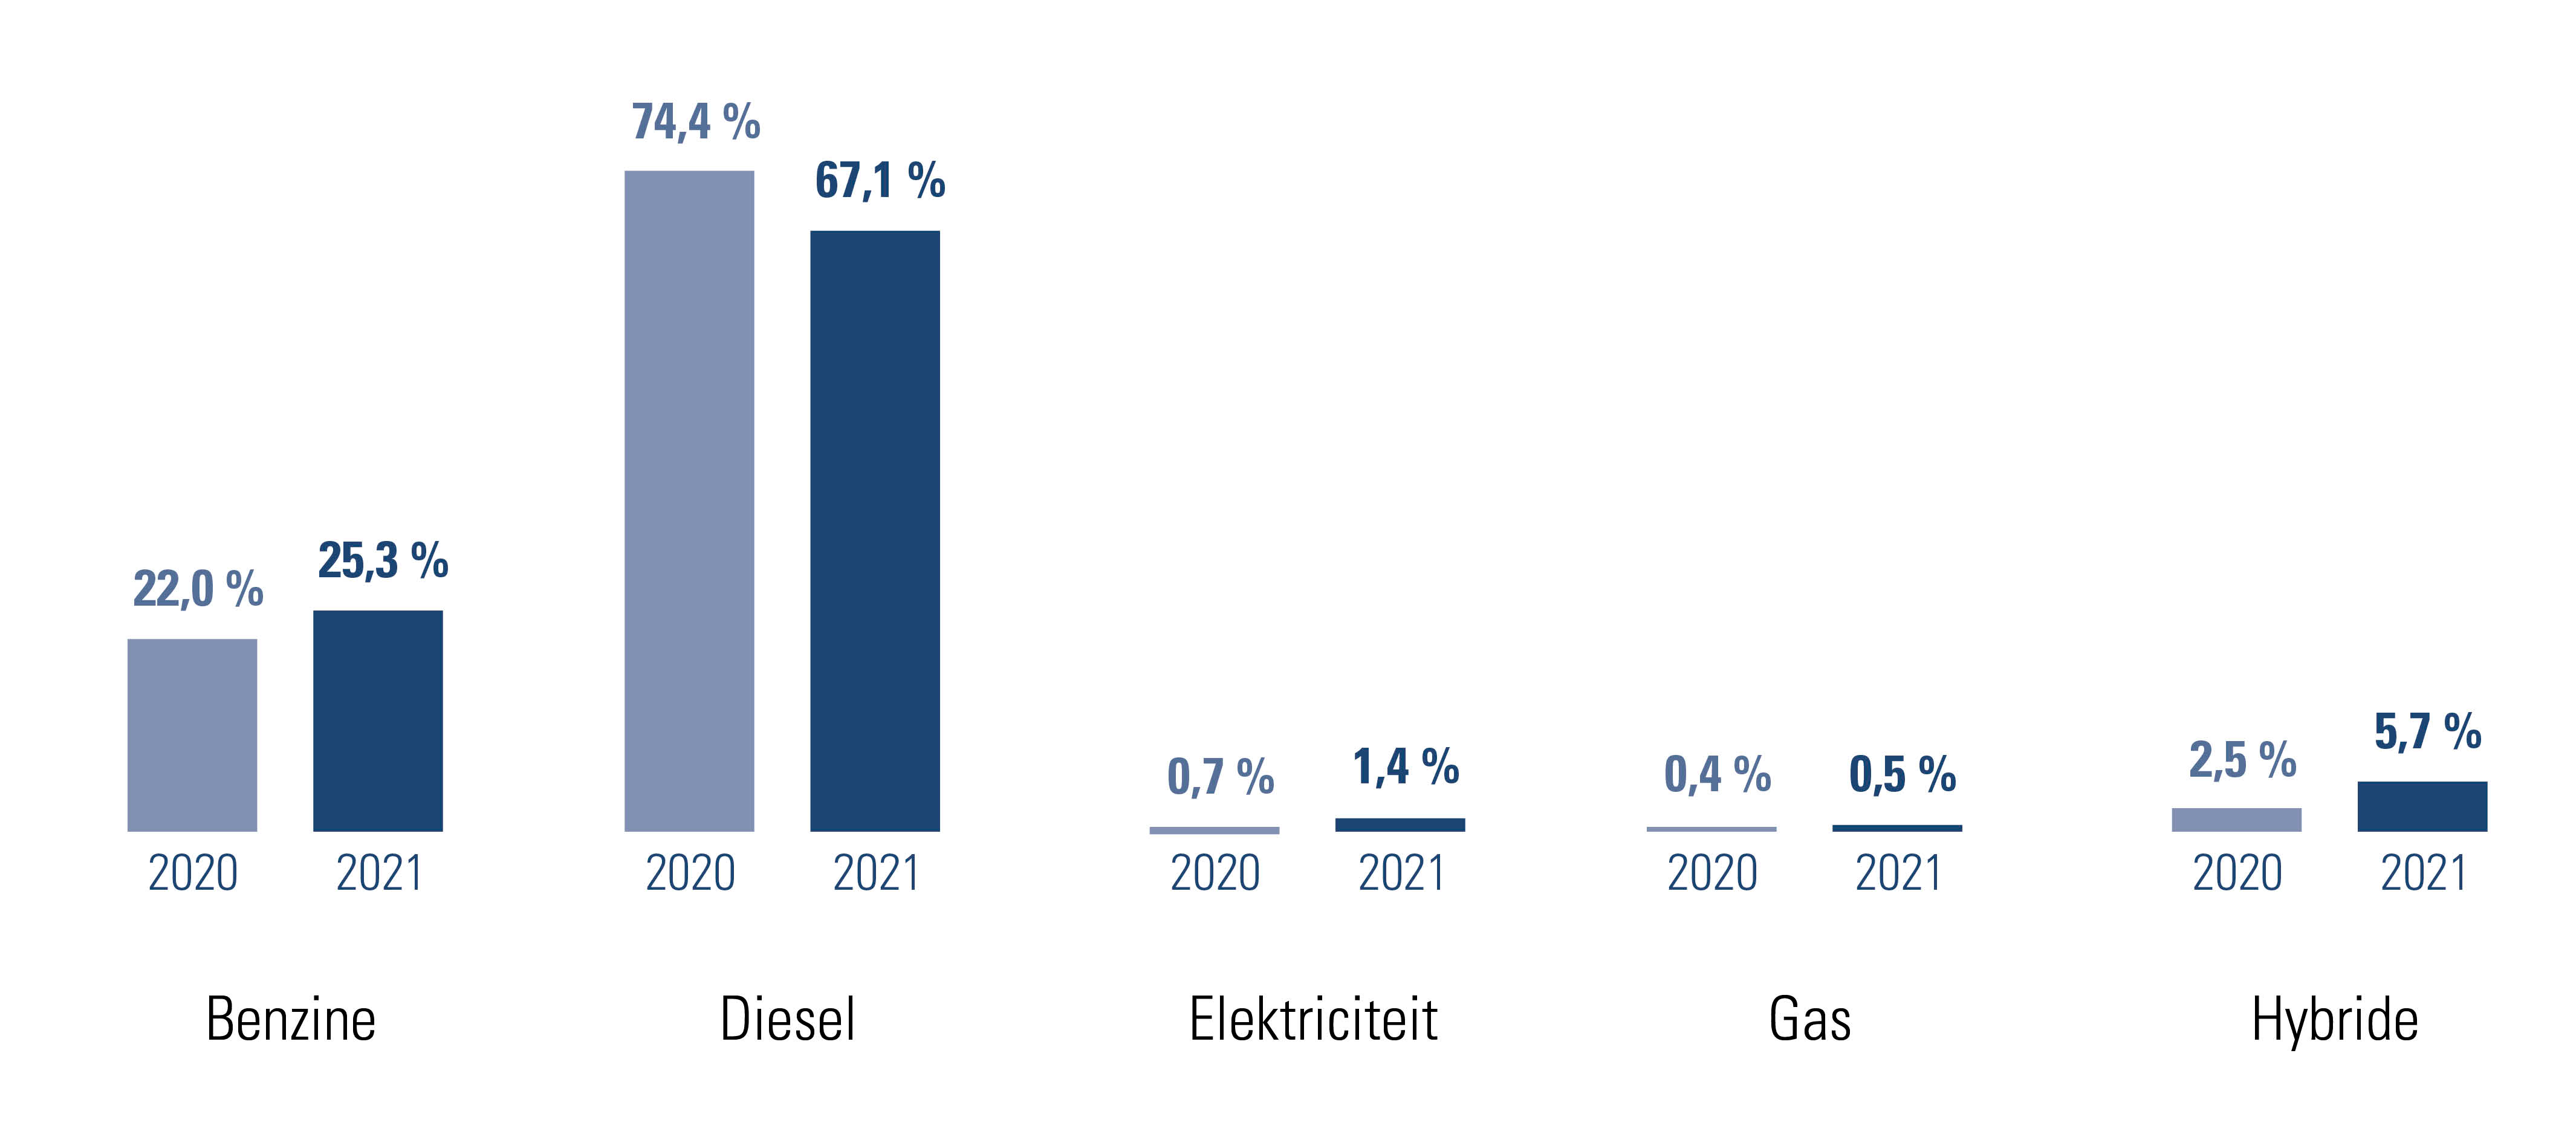 Percentage bedrijfswagens per type brandstof in 2020 en 2021